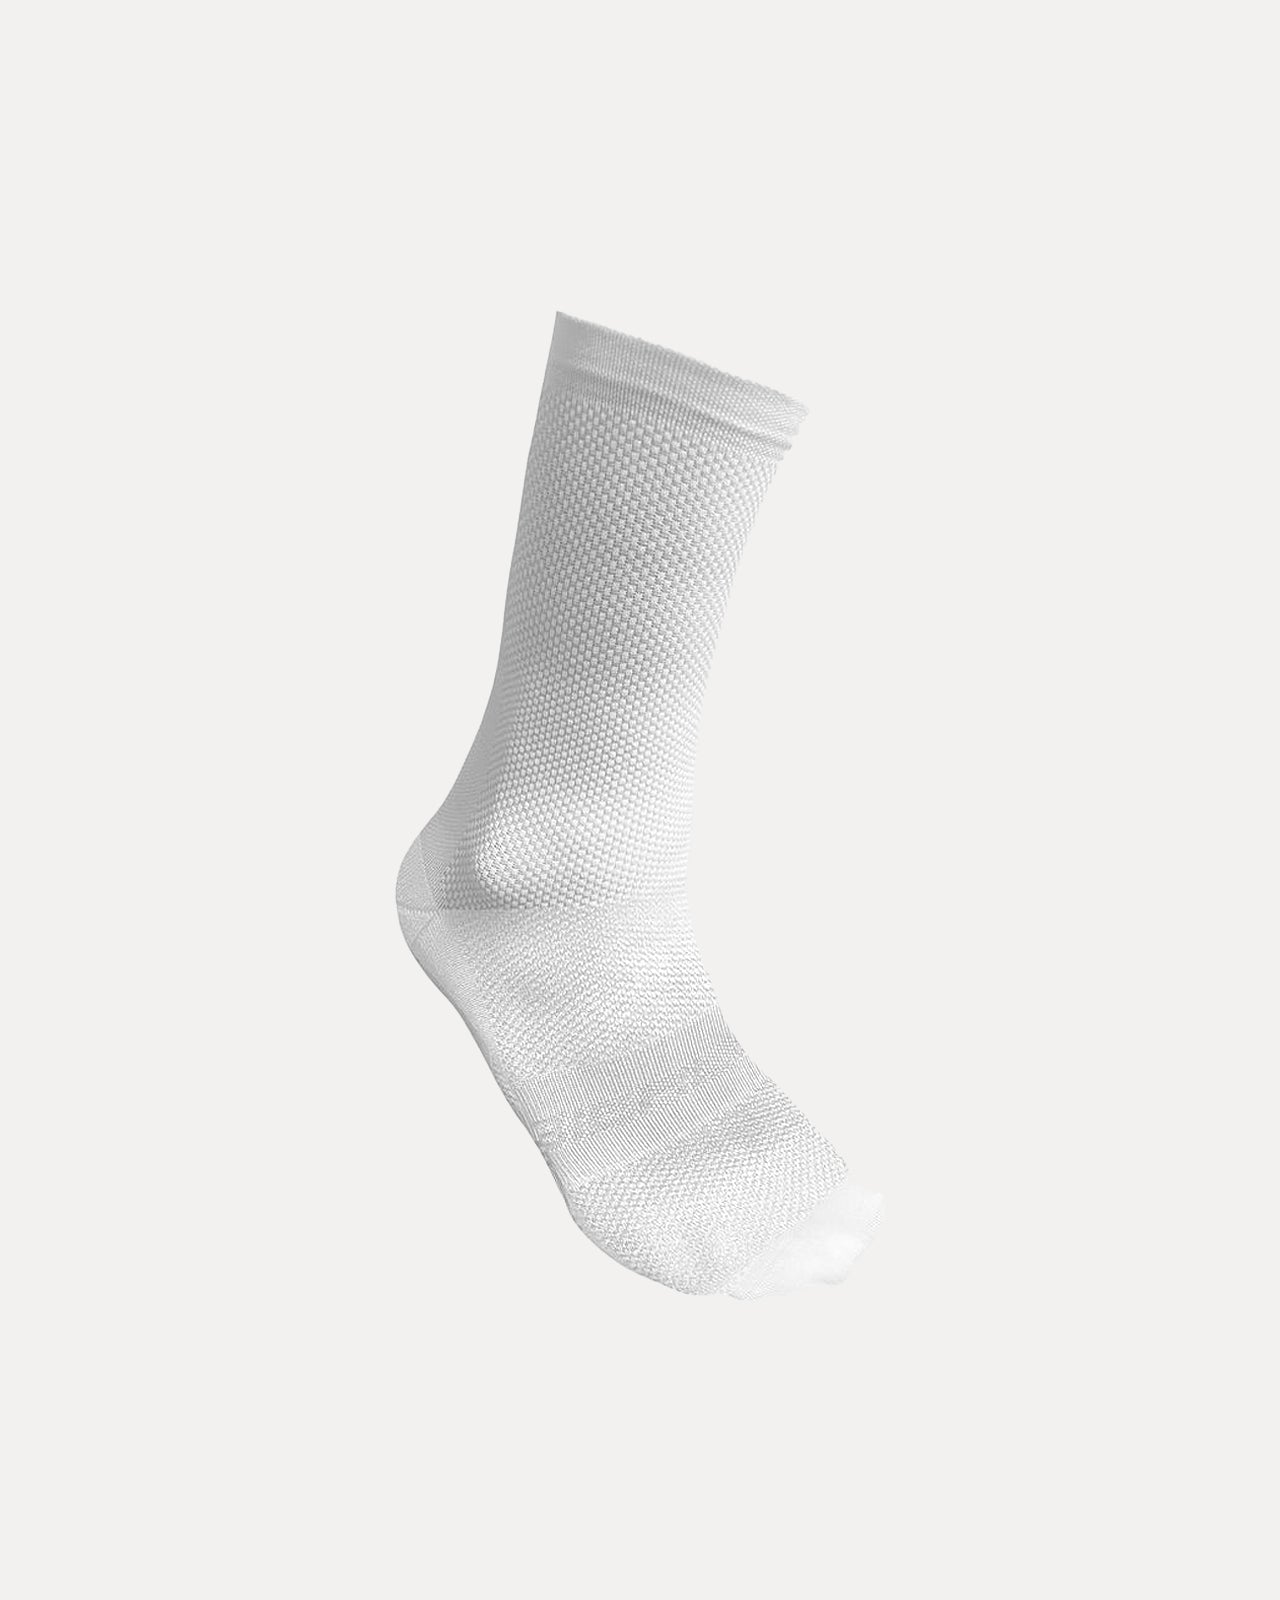 Biehler Statement Socks - White